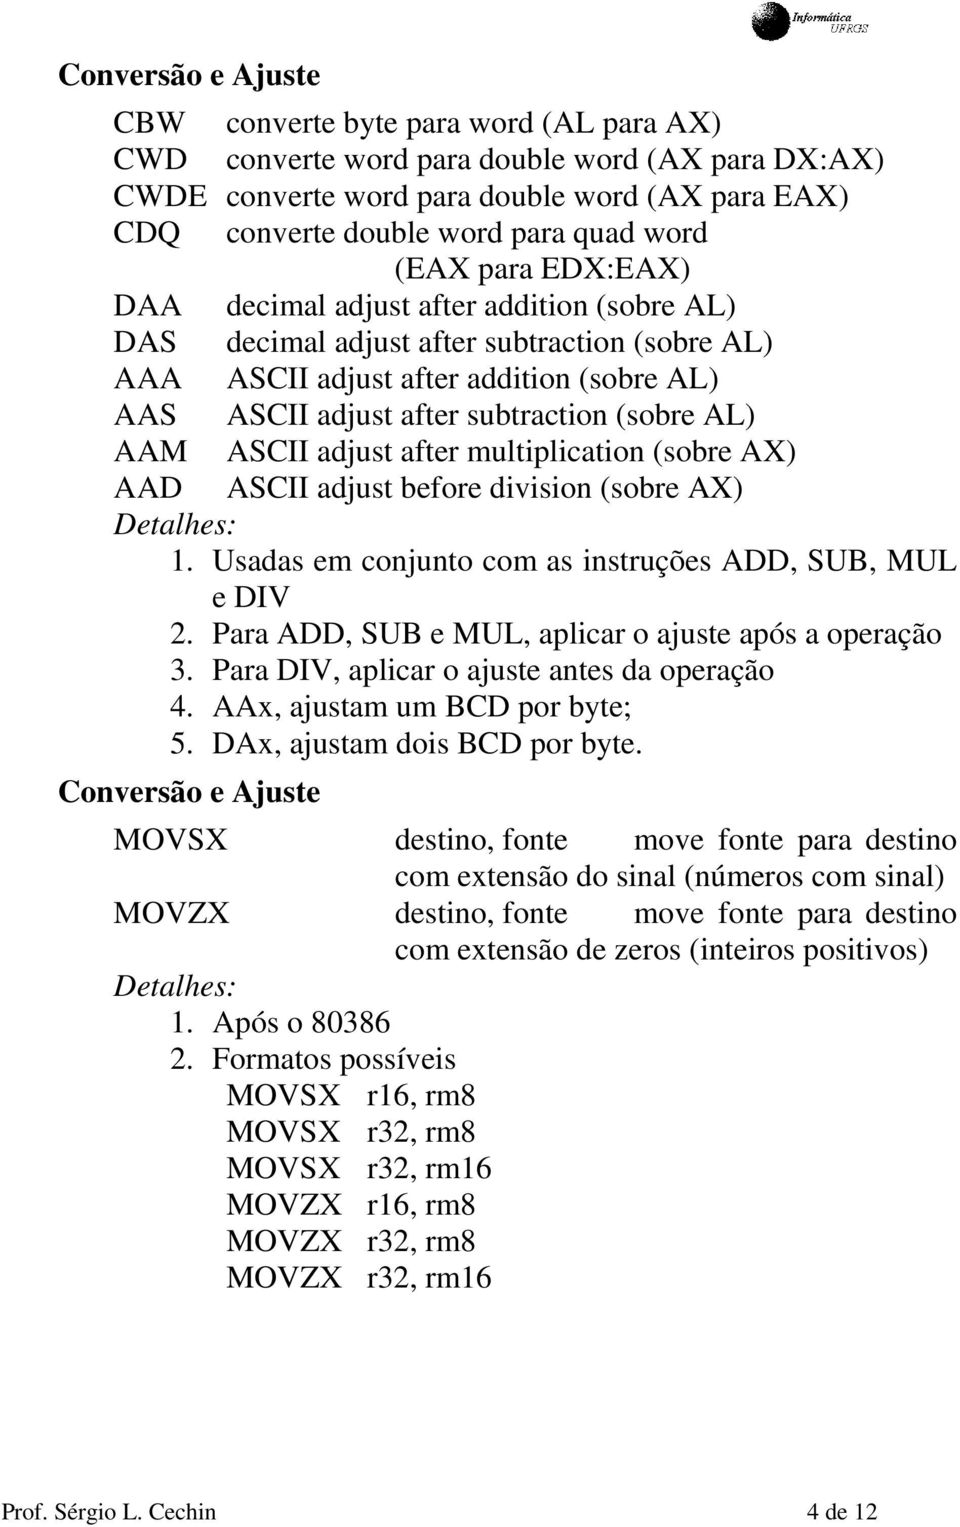 (sobre AL) AAM ASCII adjust after multiplication (sobre AX) AAD ASCII adjust before division (sobre AX) 1. Usadas em conjunto com as instruções ADD, SUB, MUL e DIV 2.